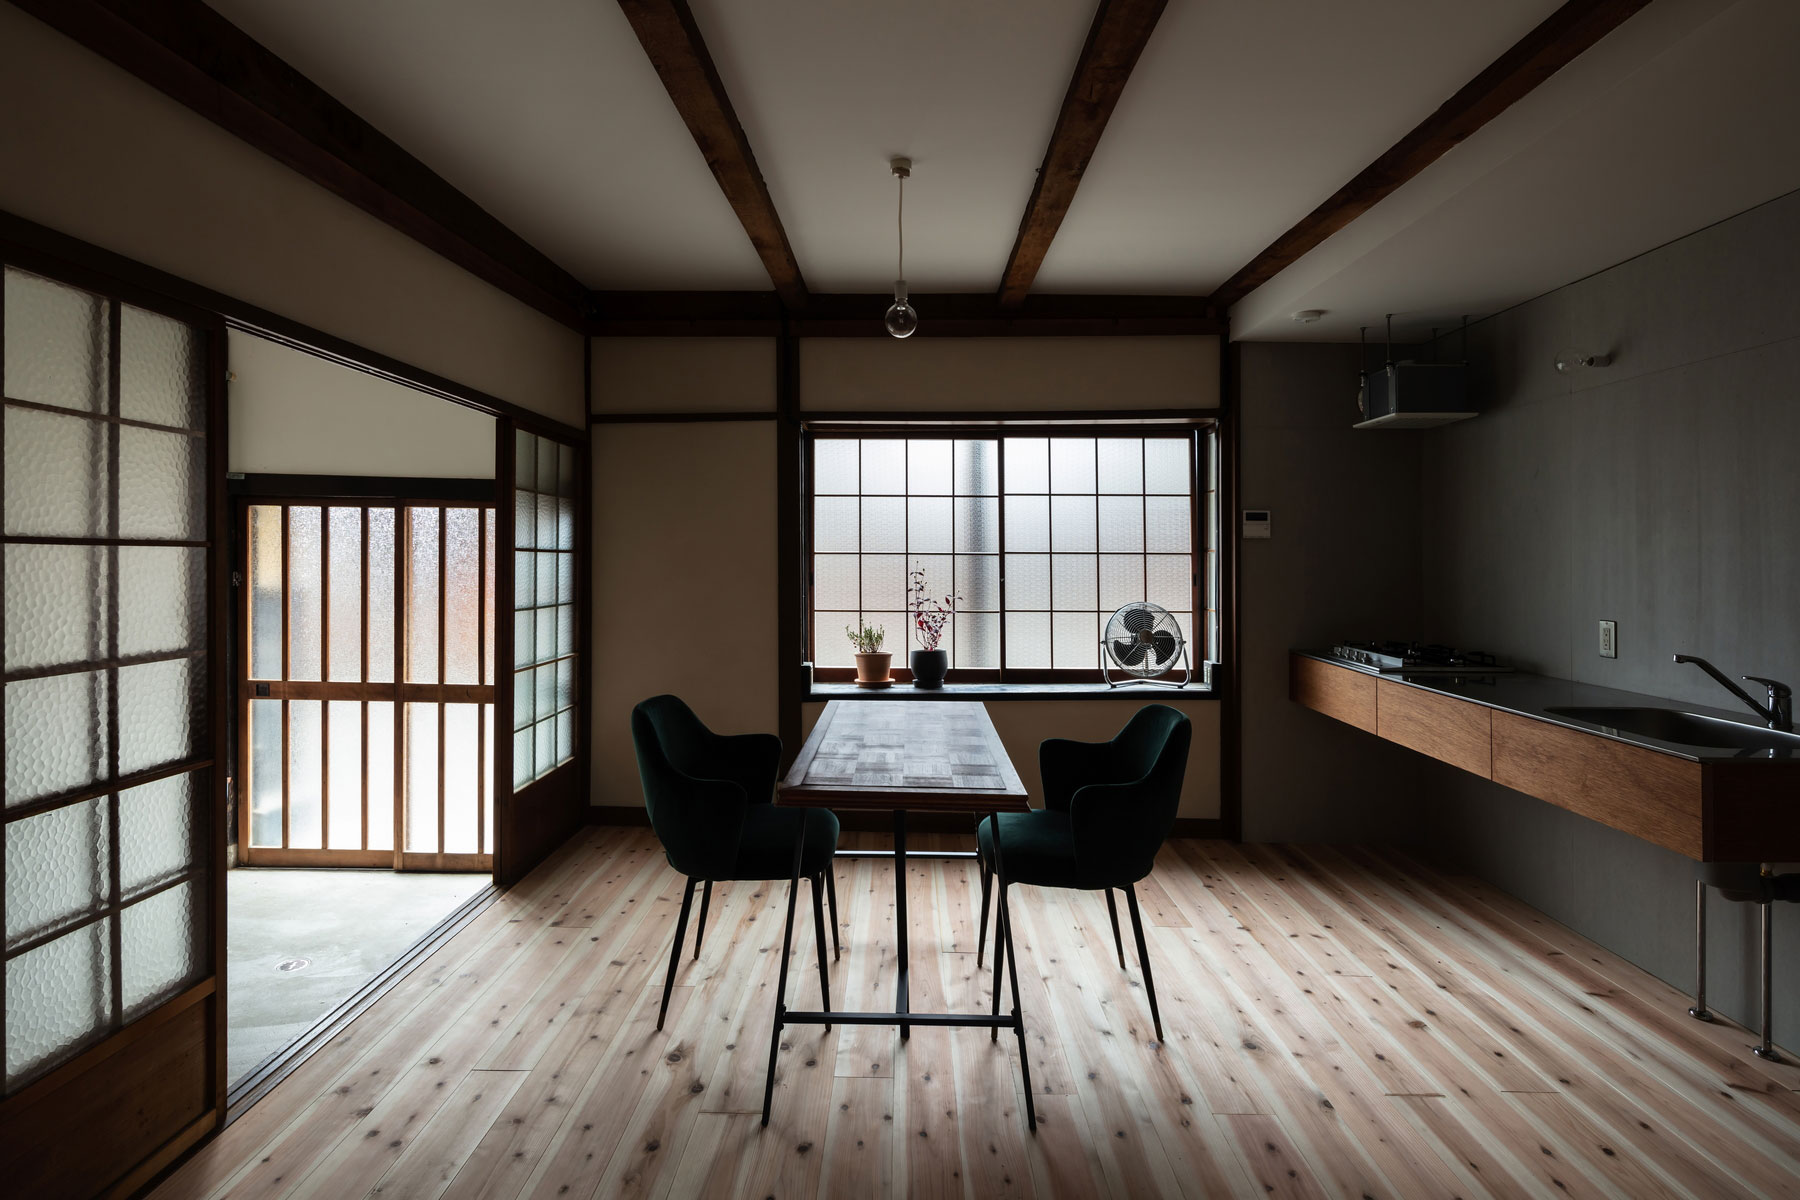 シンプルな壁付けキッチンと家電置き場として設えた出窓でテーブルをL形に囲むダイニング。